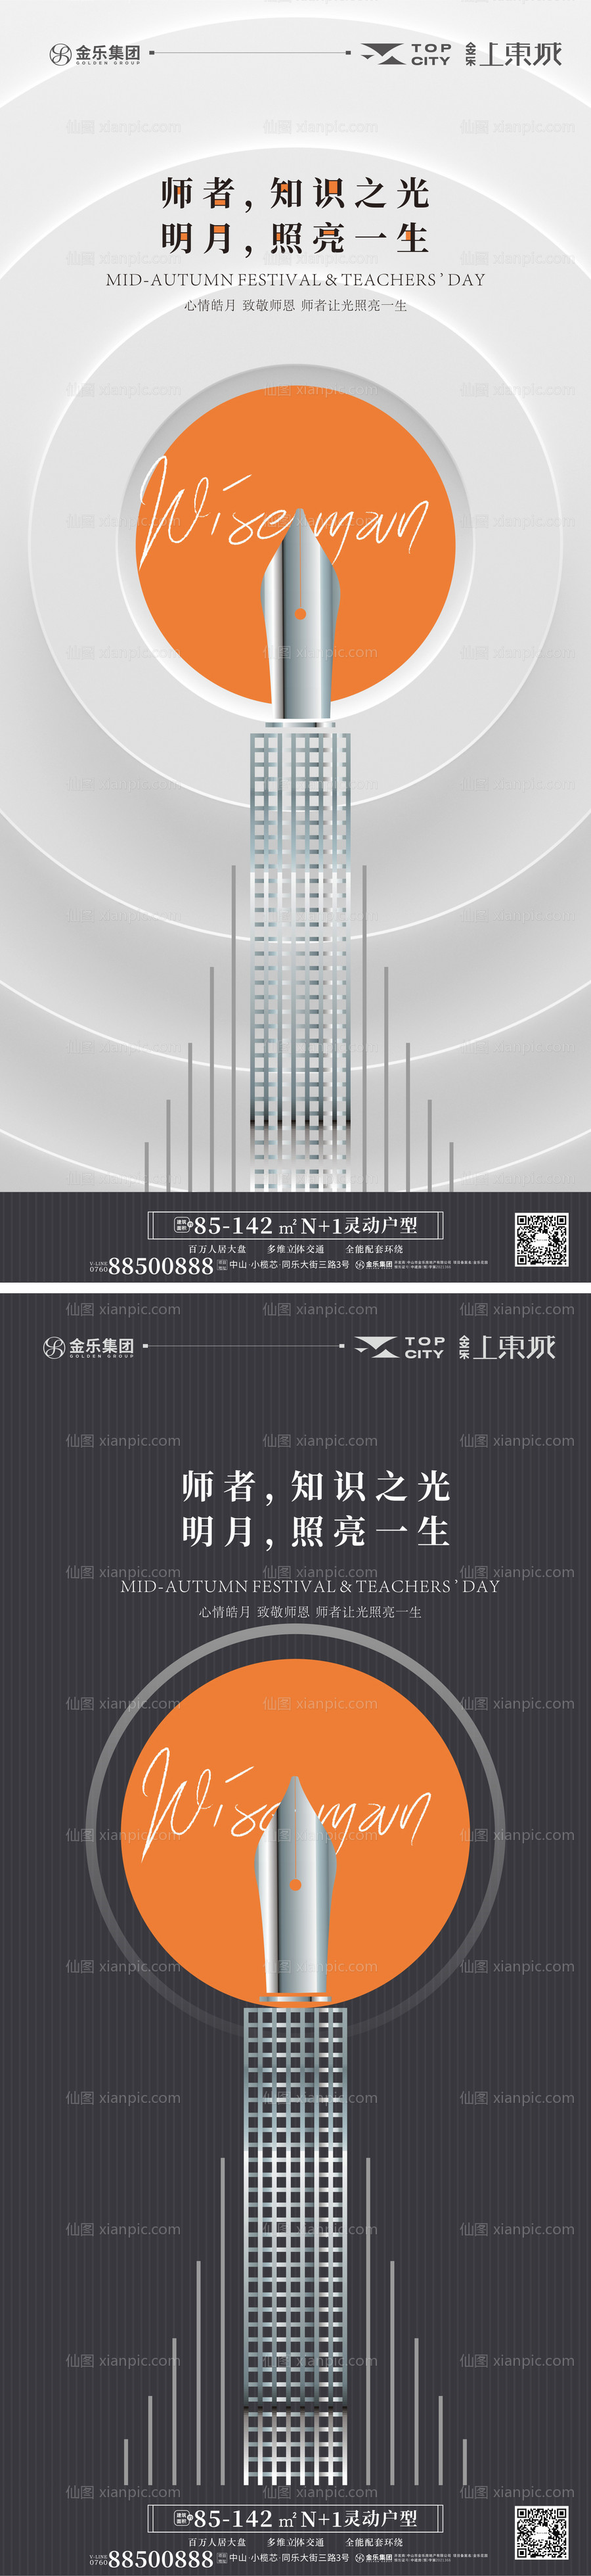 素材乐-地产中秋节教师节系列海报